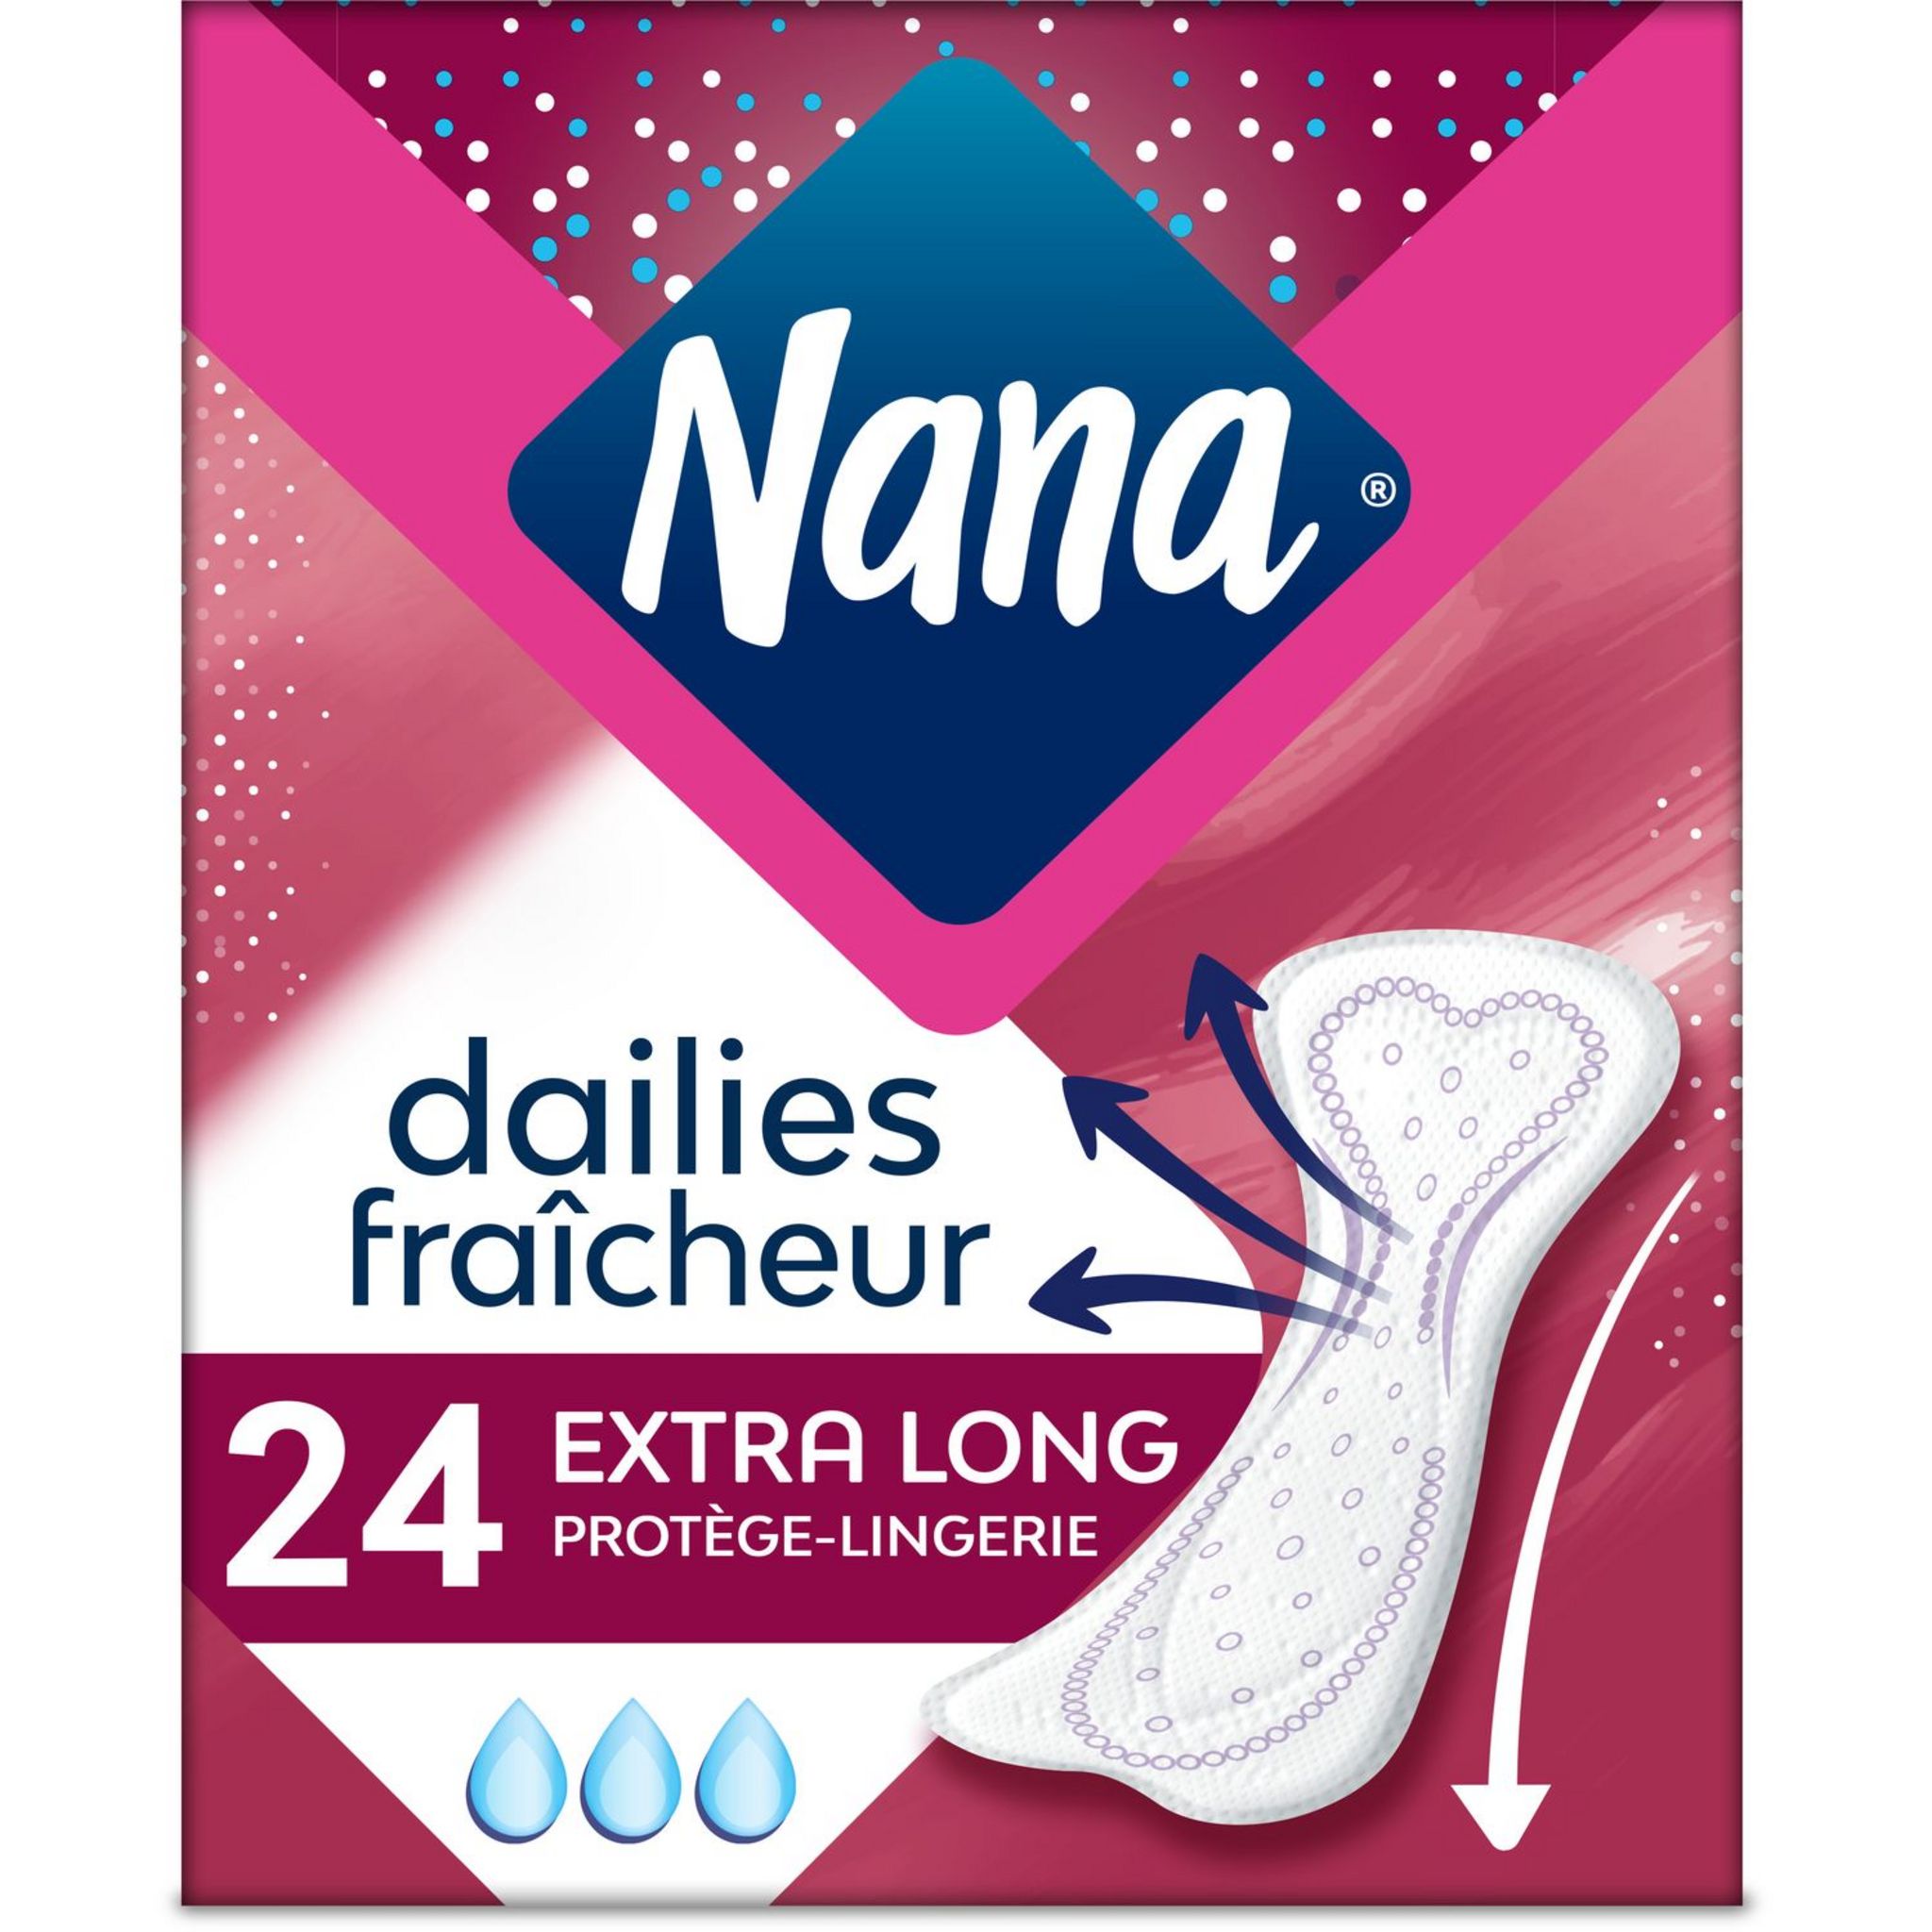 NANA Protège-lingerie fraîcheur extra long 24 protège-lingerie pas